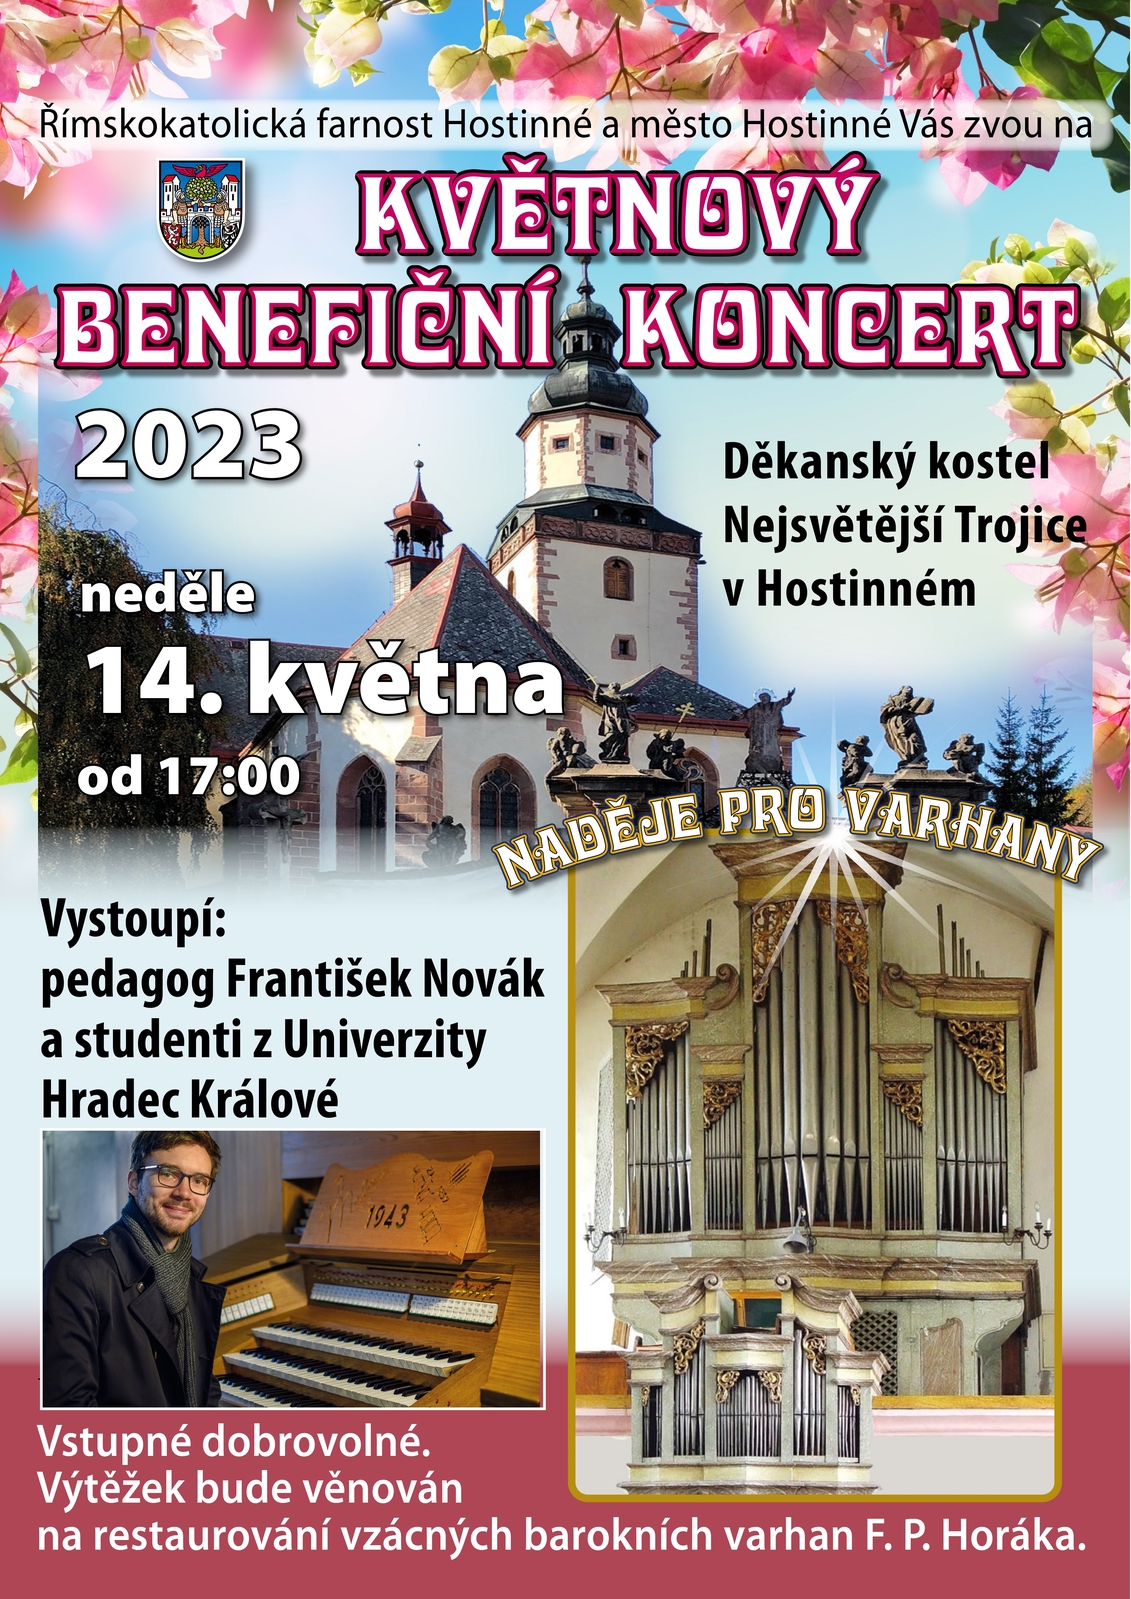 A3 Kvetnovy koncert 23_page-0001 (1).jpg